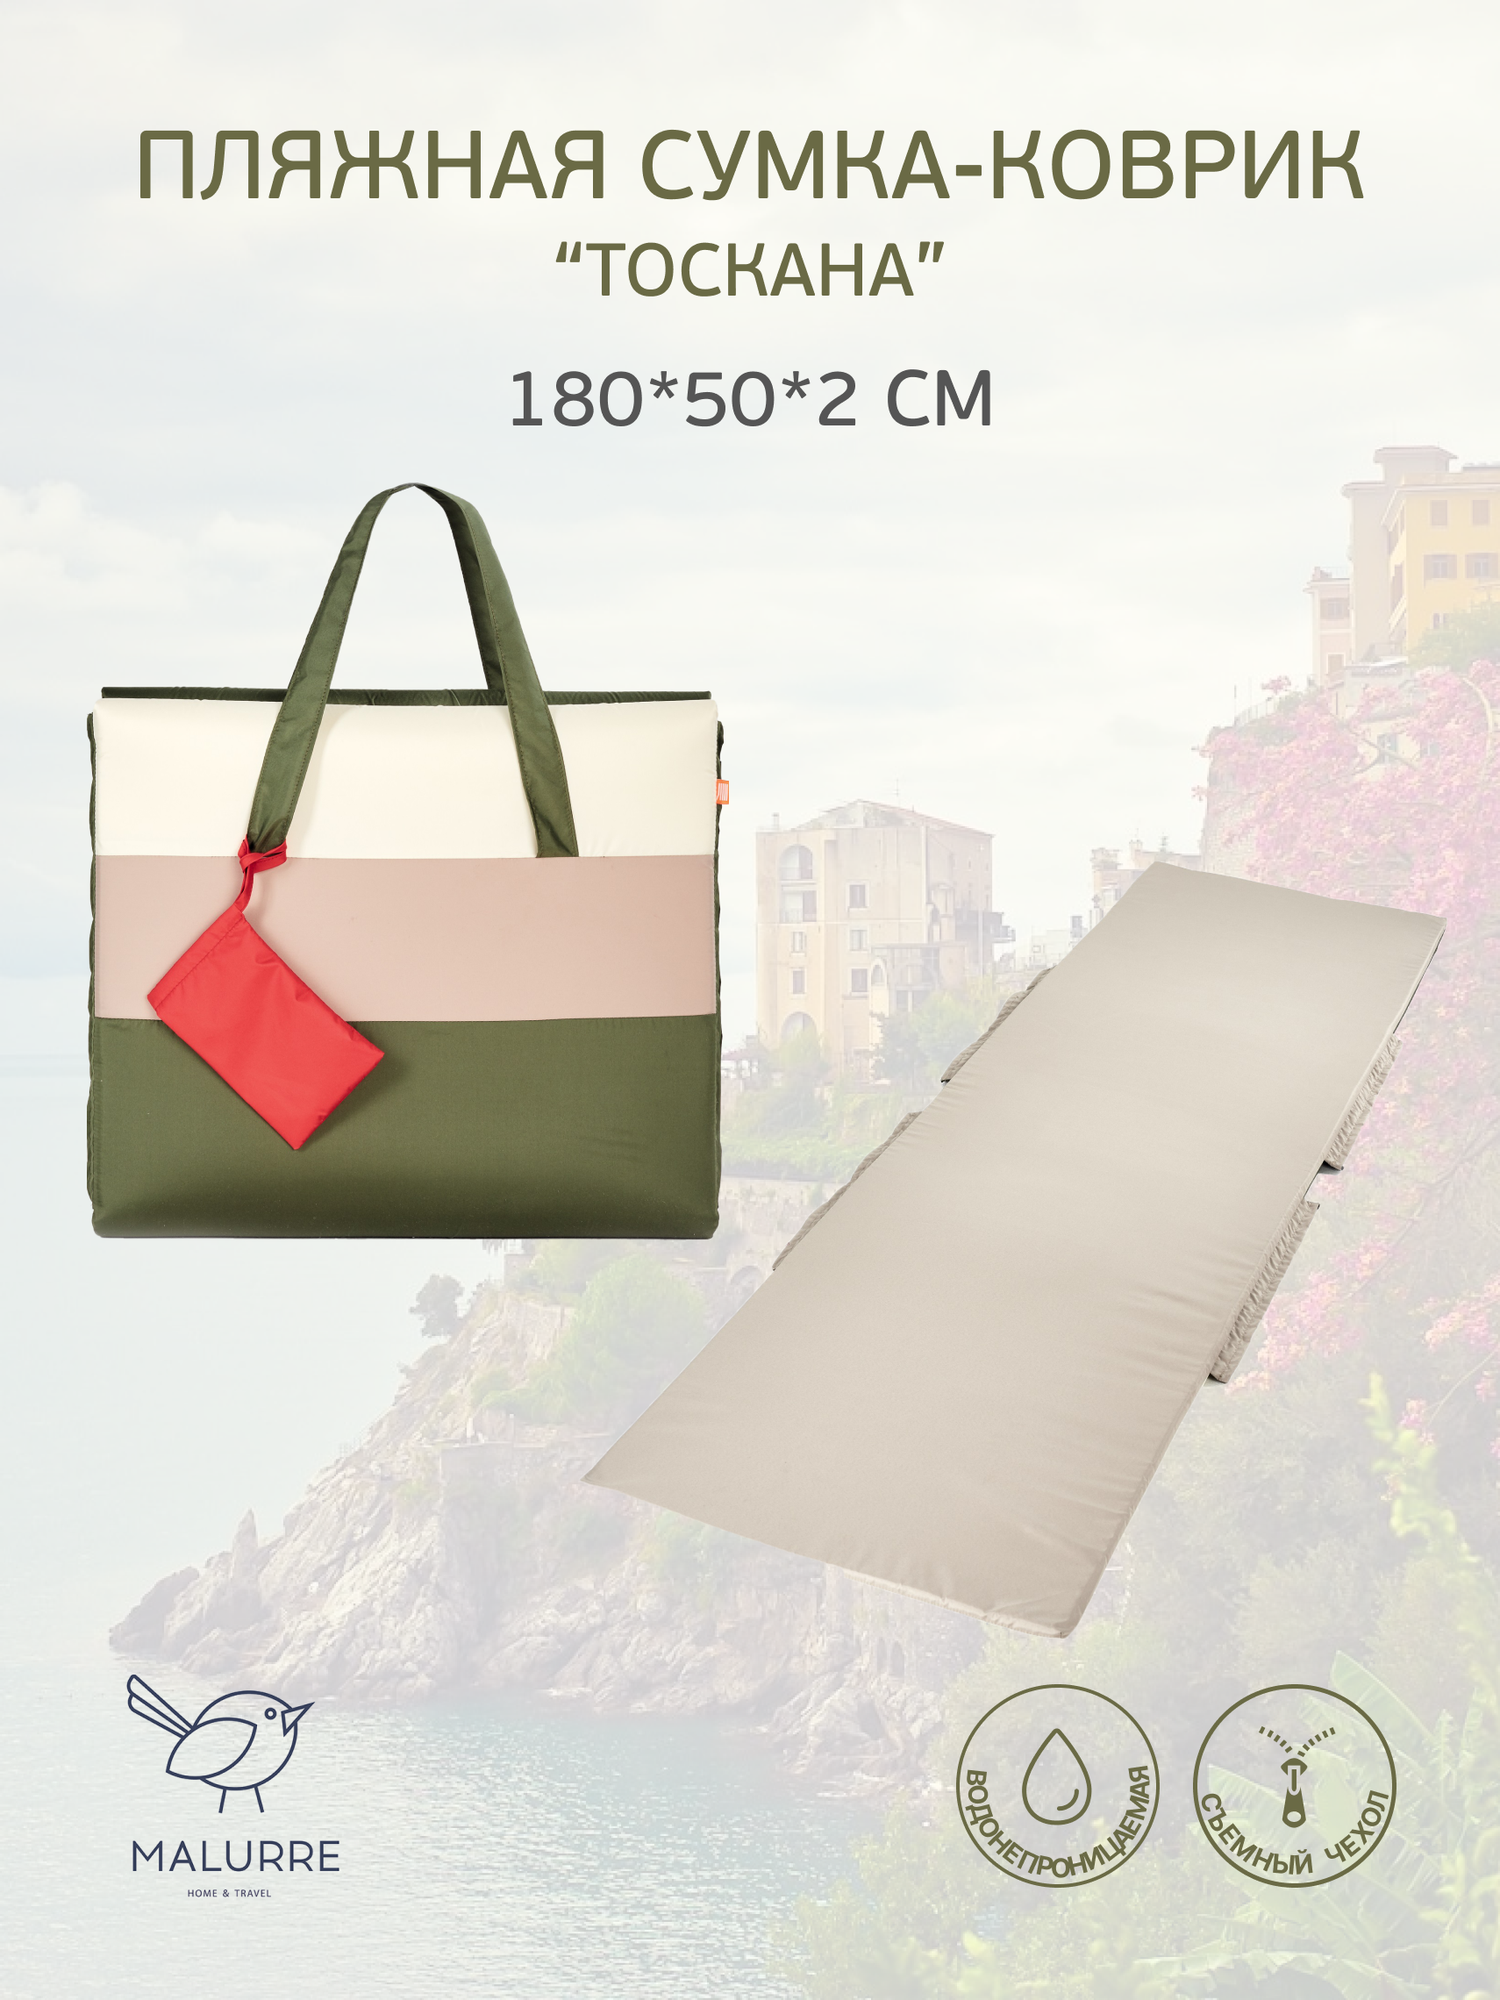 Пляжная сумка-матрас Malurre, 180*50*2 см